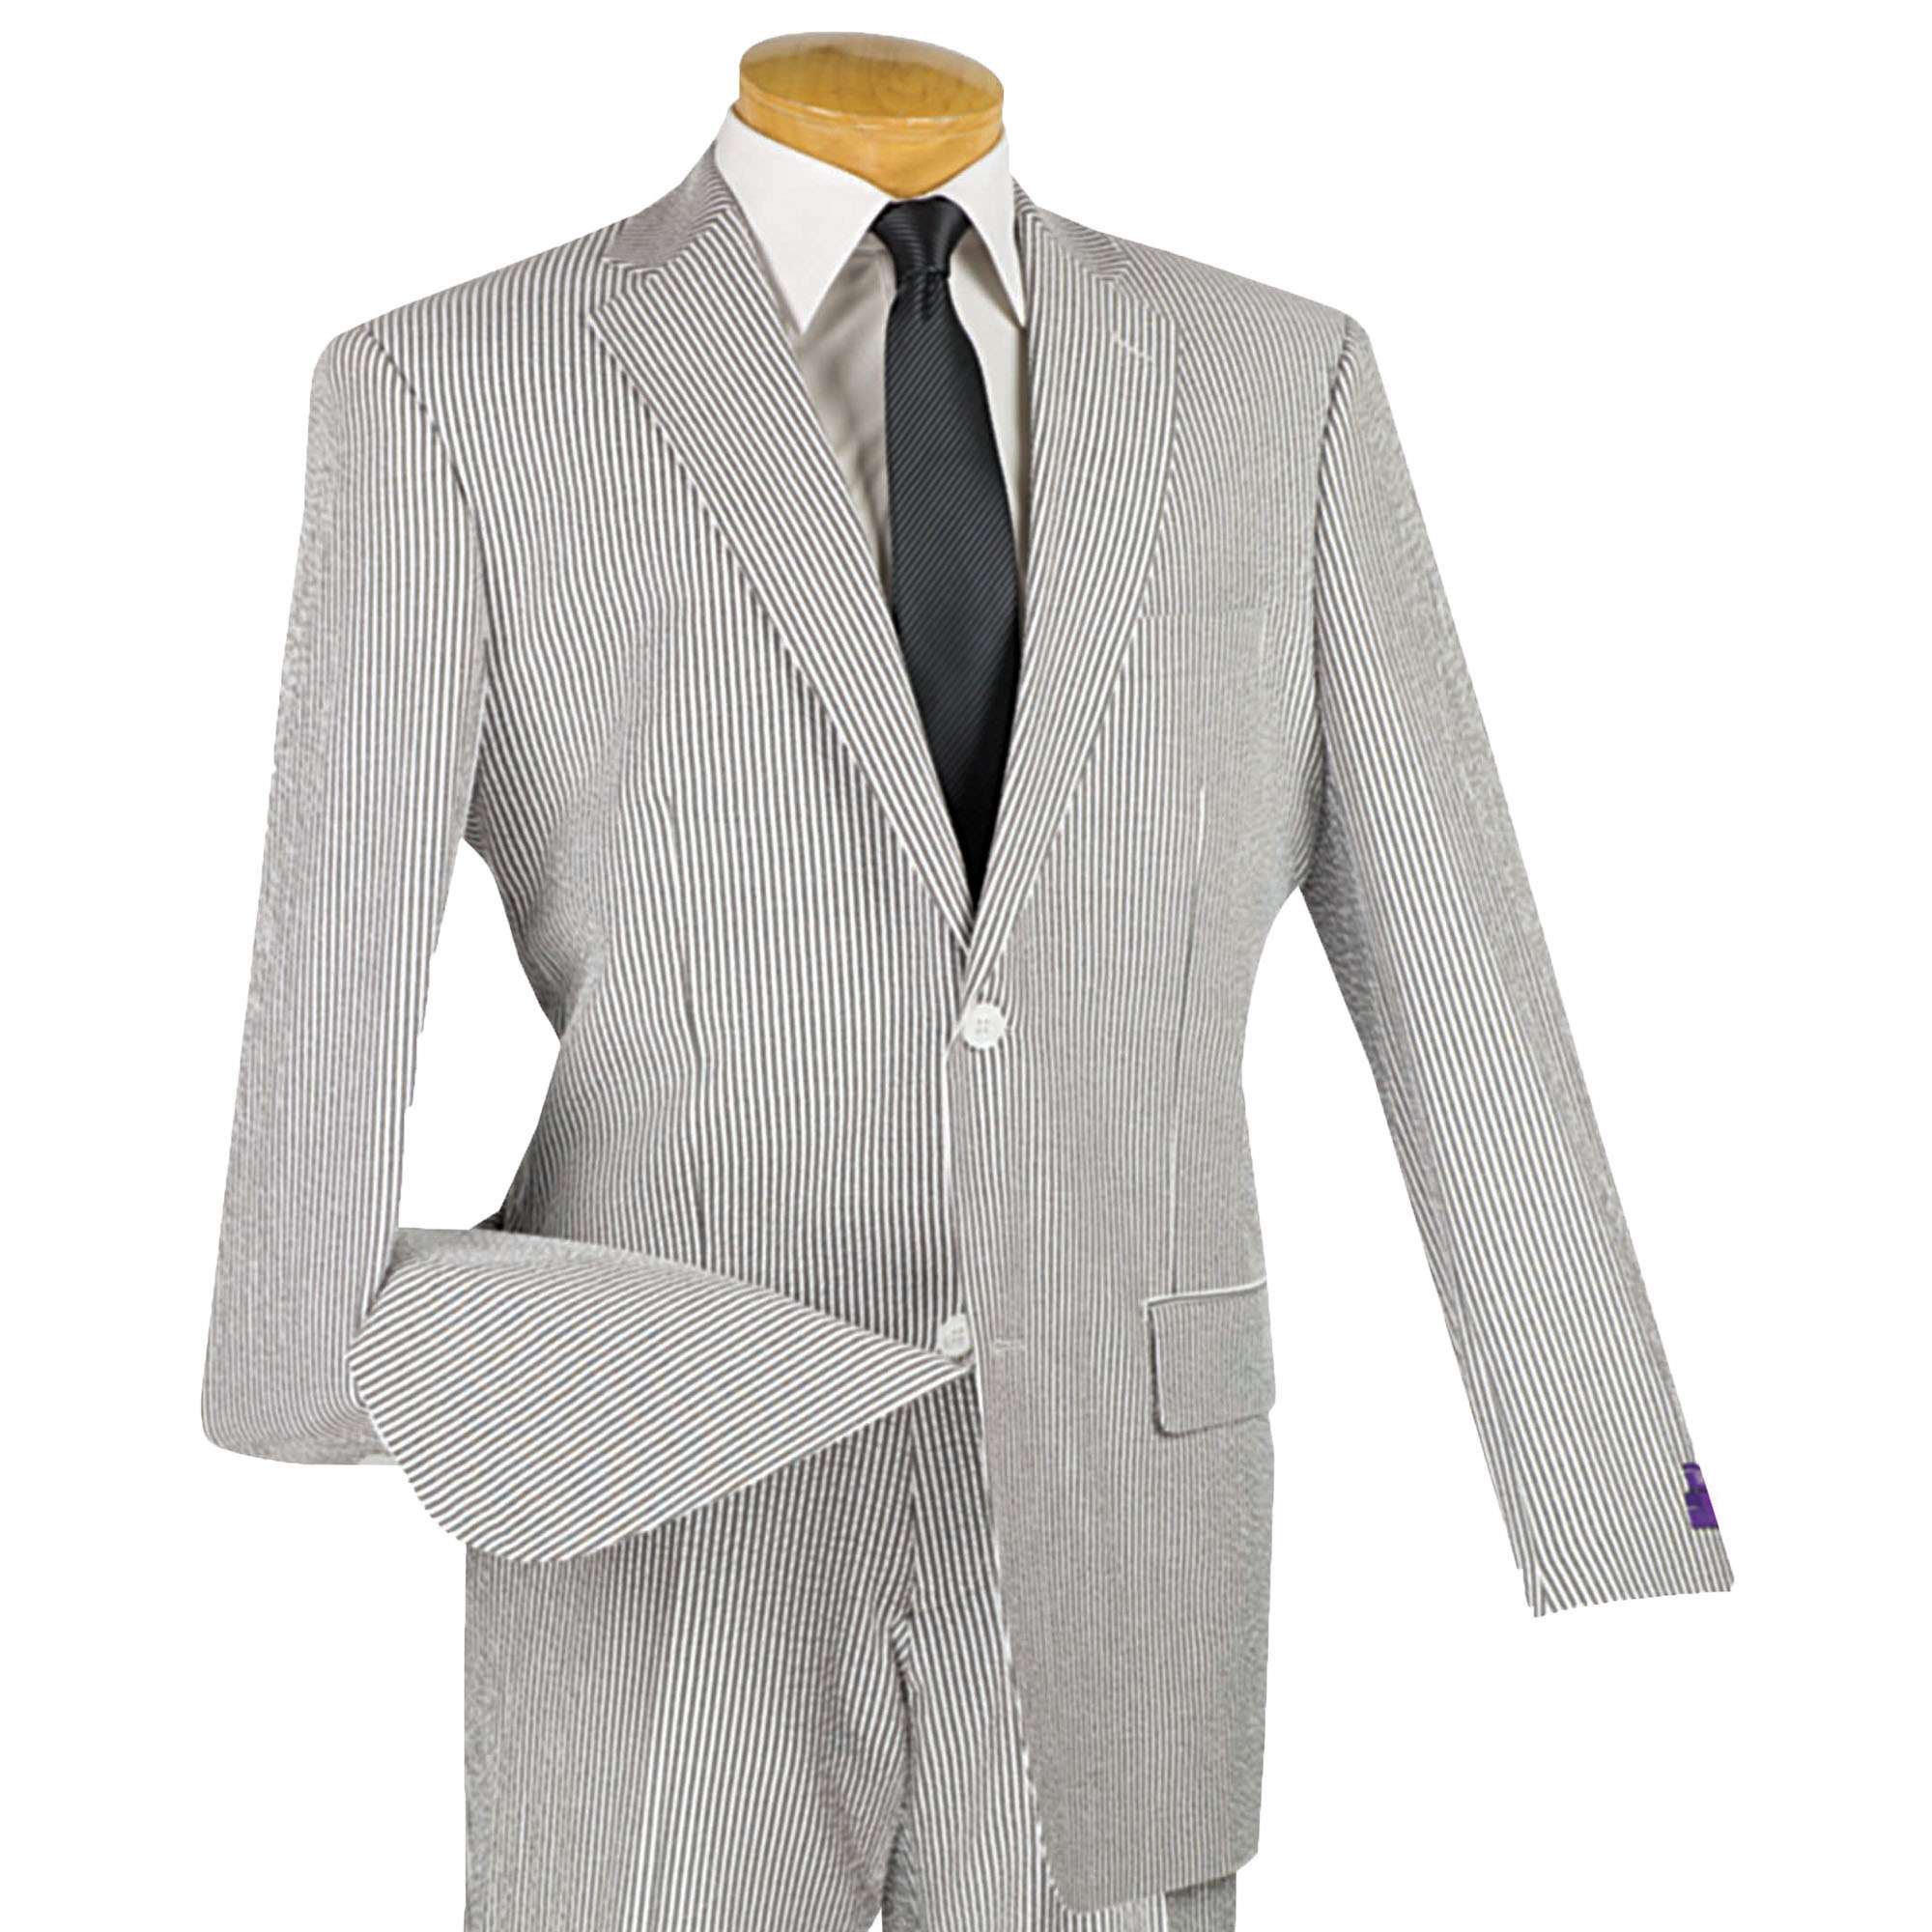 VINCI Men's Tan Striped Seersucker 2 Button Classic Fit Suit 100% Cotton NEW 